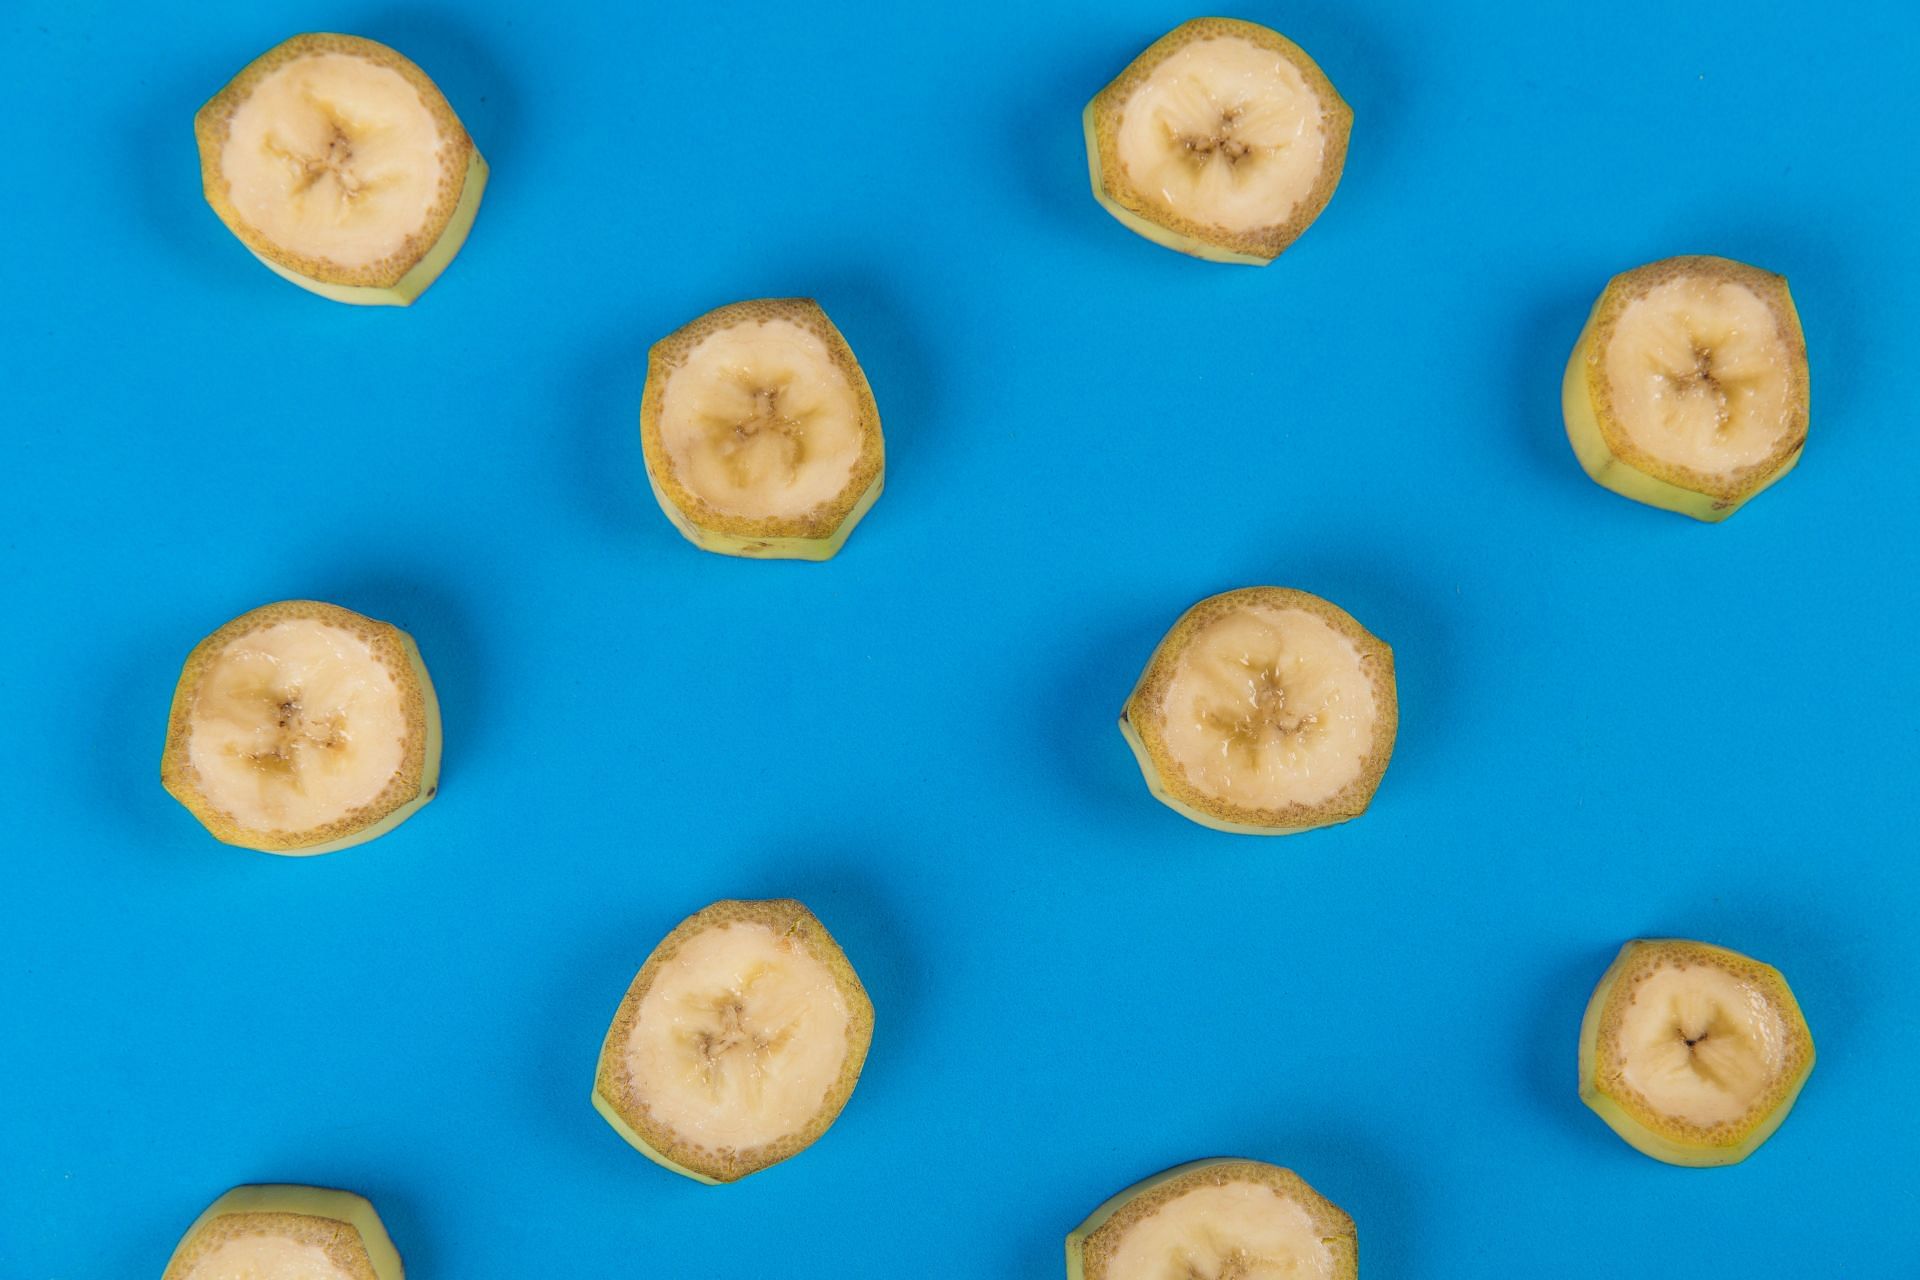 Carbs in a banana. (Image via Pexels/ Toni Cuenca)